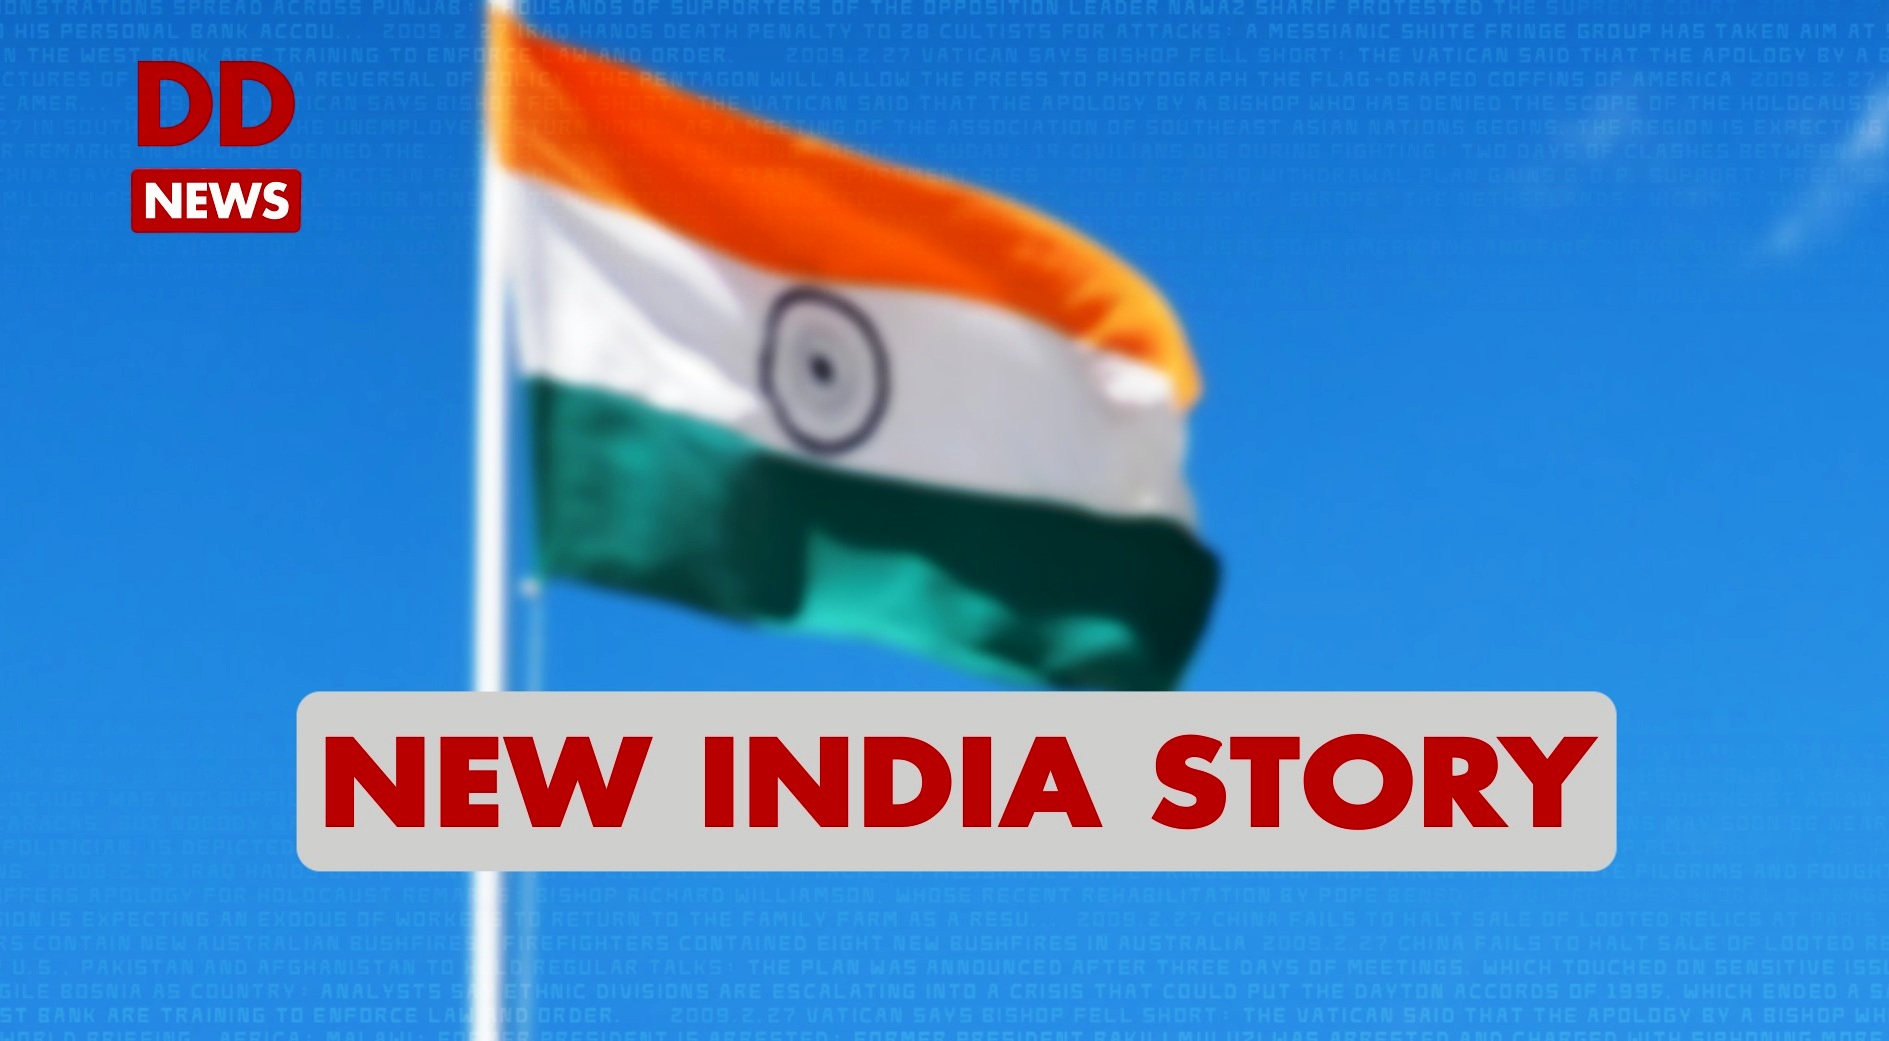 New India Story / Telangana / Karimnagar / Swachh Bharat Abhiyan